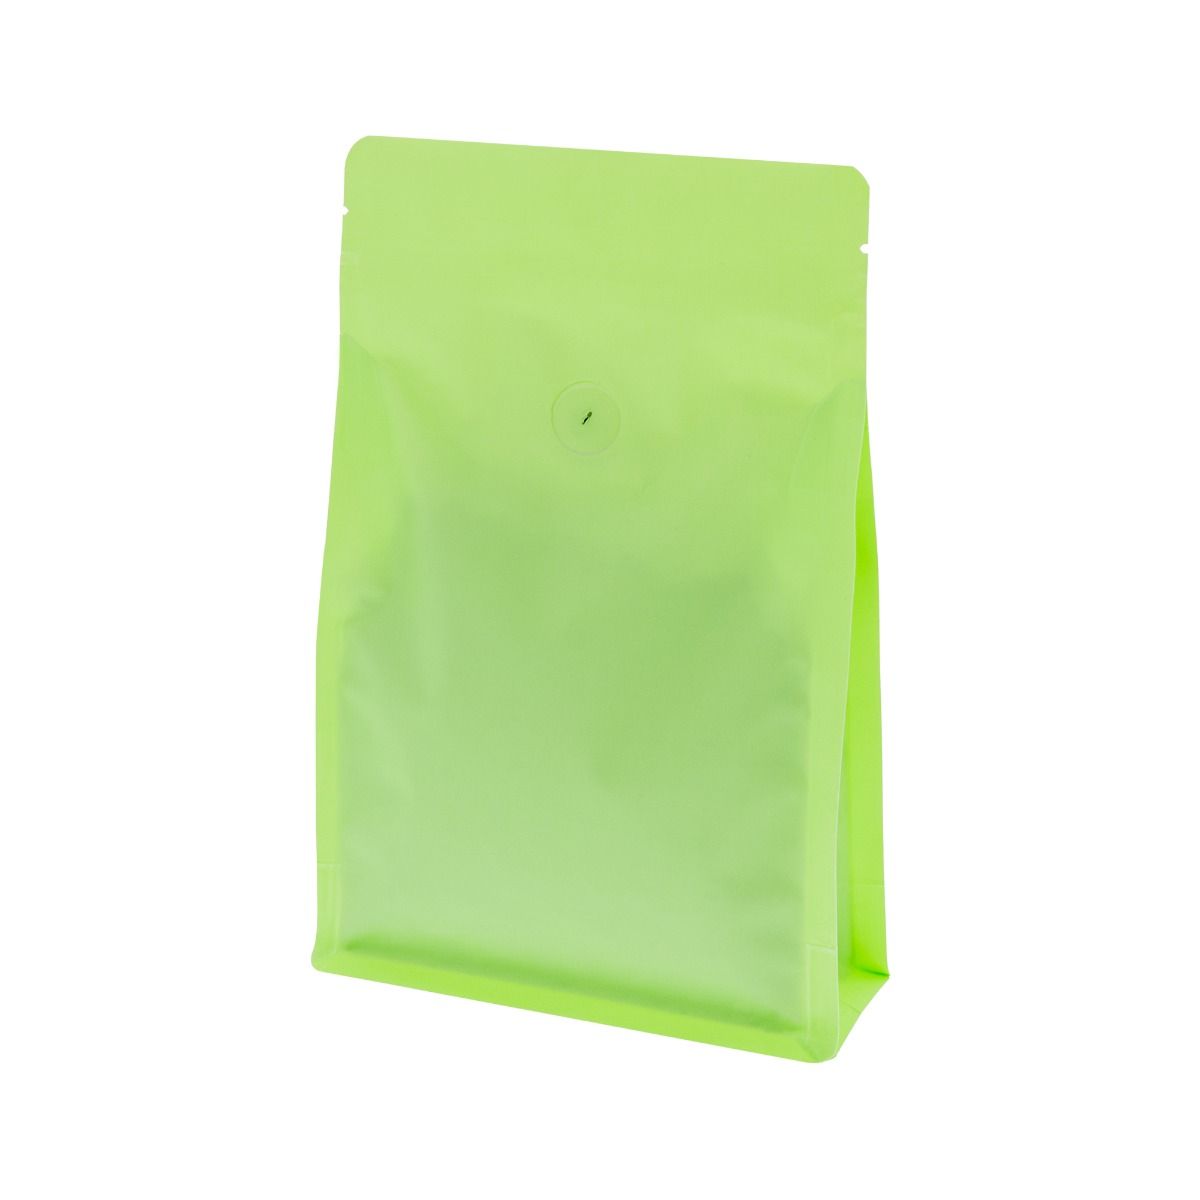 Flachboden-Kaffeebeutel mit Zip-verschluss - matt grün (100% recycelbar)